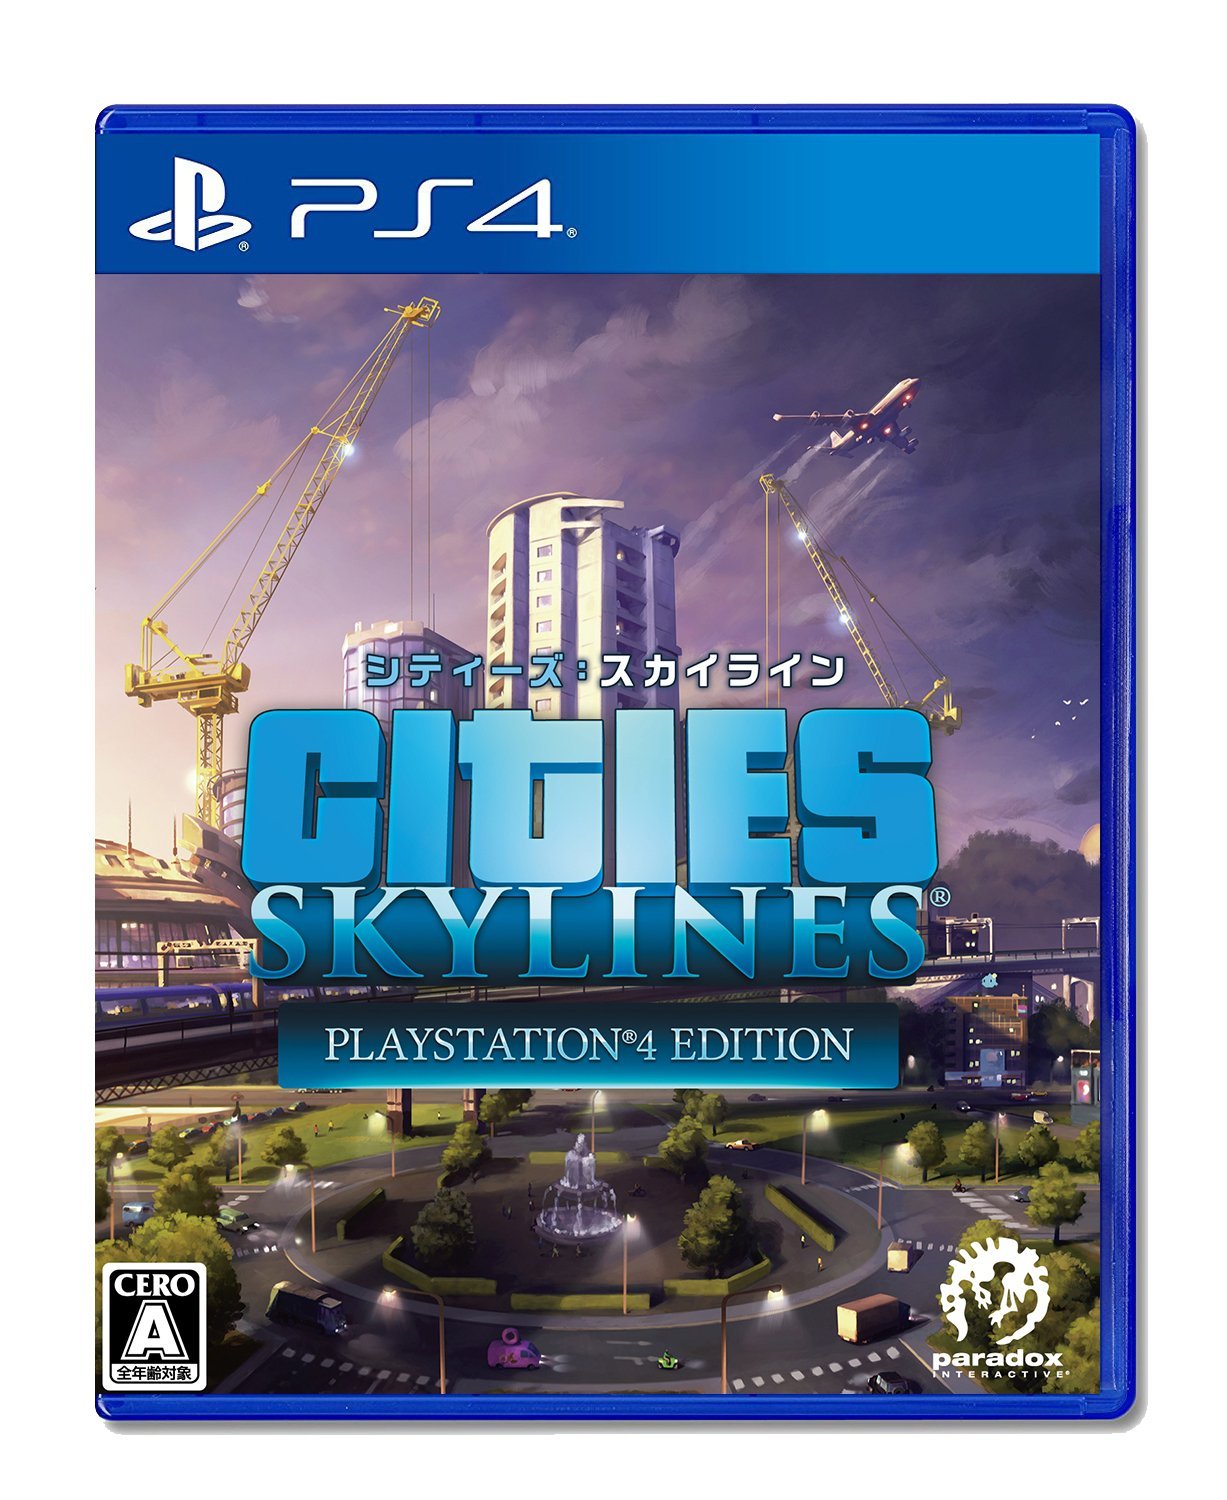 PS4で遊べる、シムシティのような街作り・都市開発シミュレーション